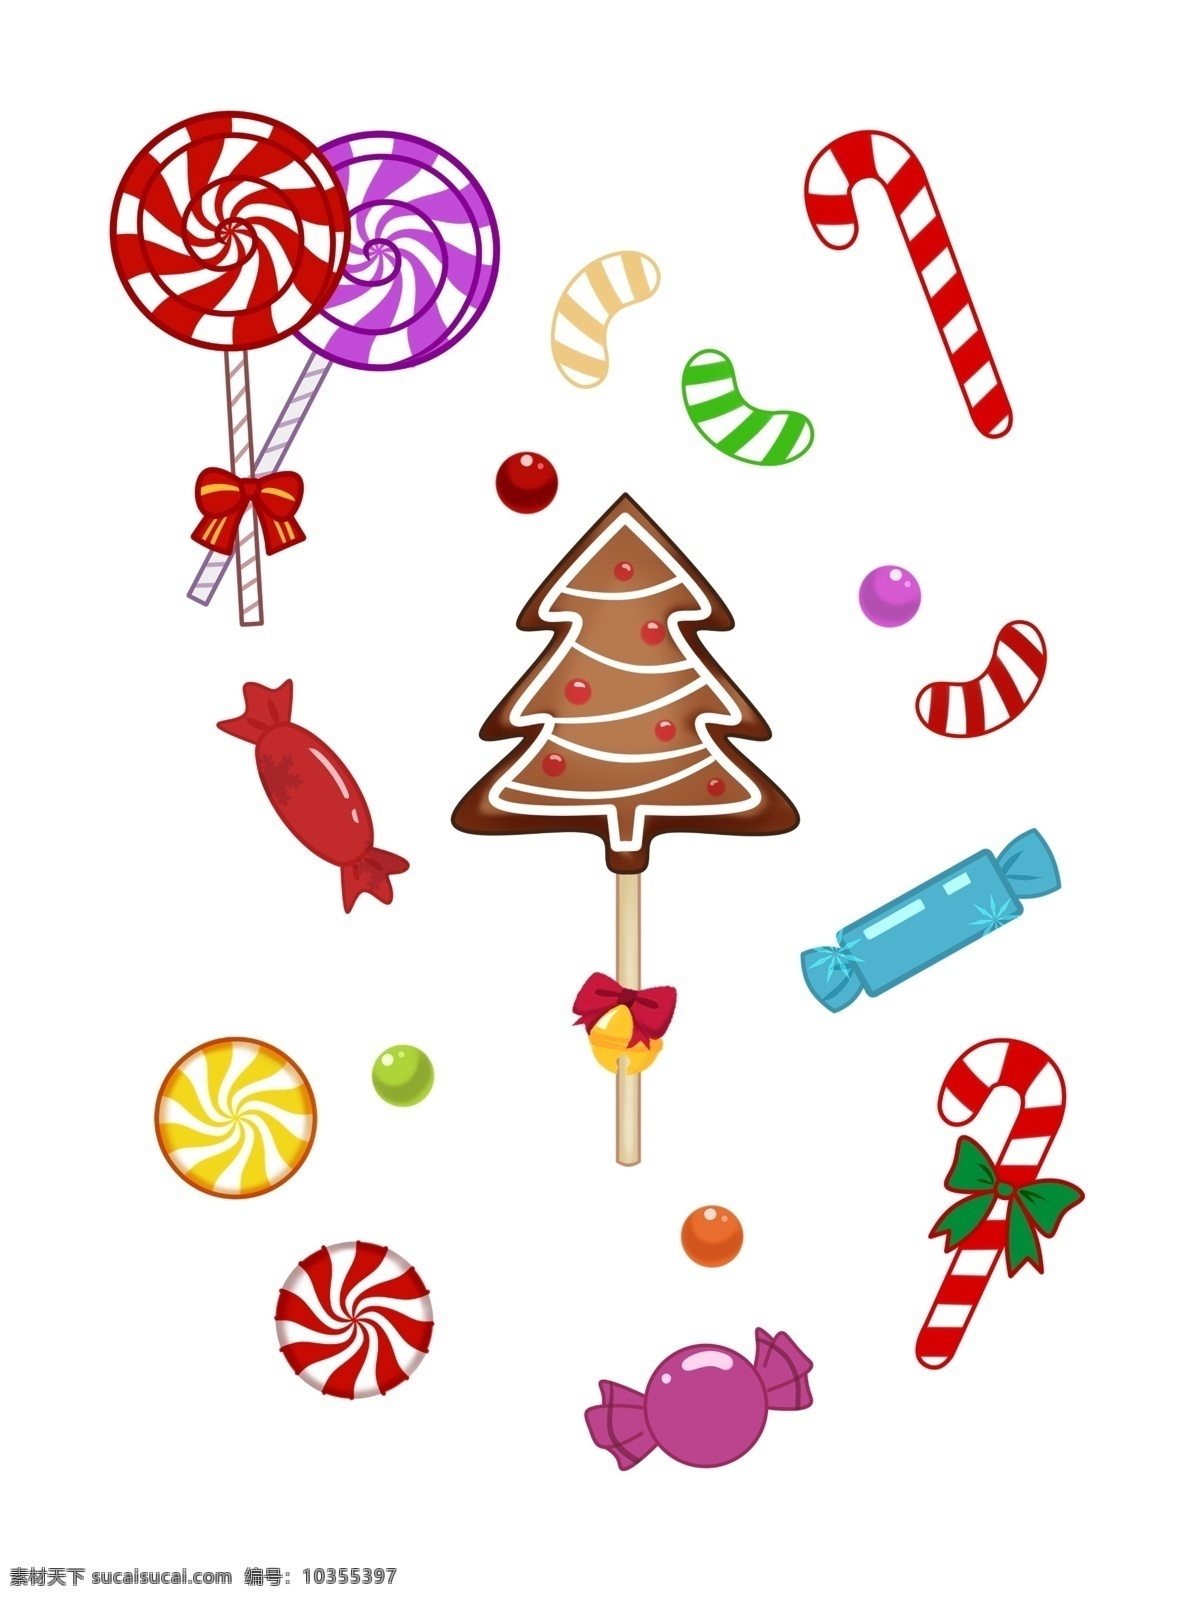 手绘 圣诞 糖果 套 图 拐杖 糖 波 板 巧克力 商用 圣诞节 红色 绿色 可爱 创意 手绘风 平安夜 糖球 波板糖 拐杖糖 巧克力圣诞树 紫色 黄色 彩色 甜美 小清新 配图 装饰 可商用